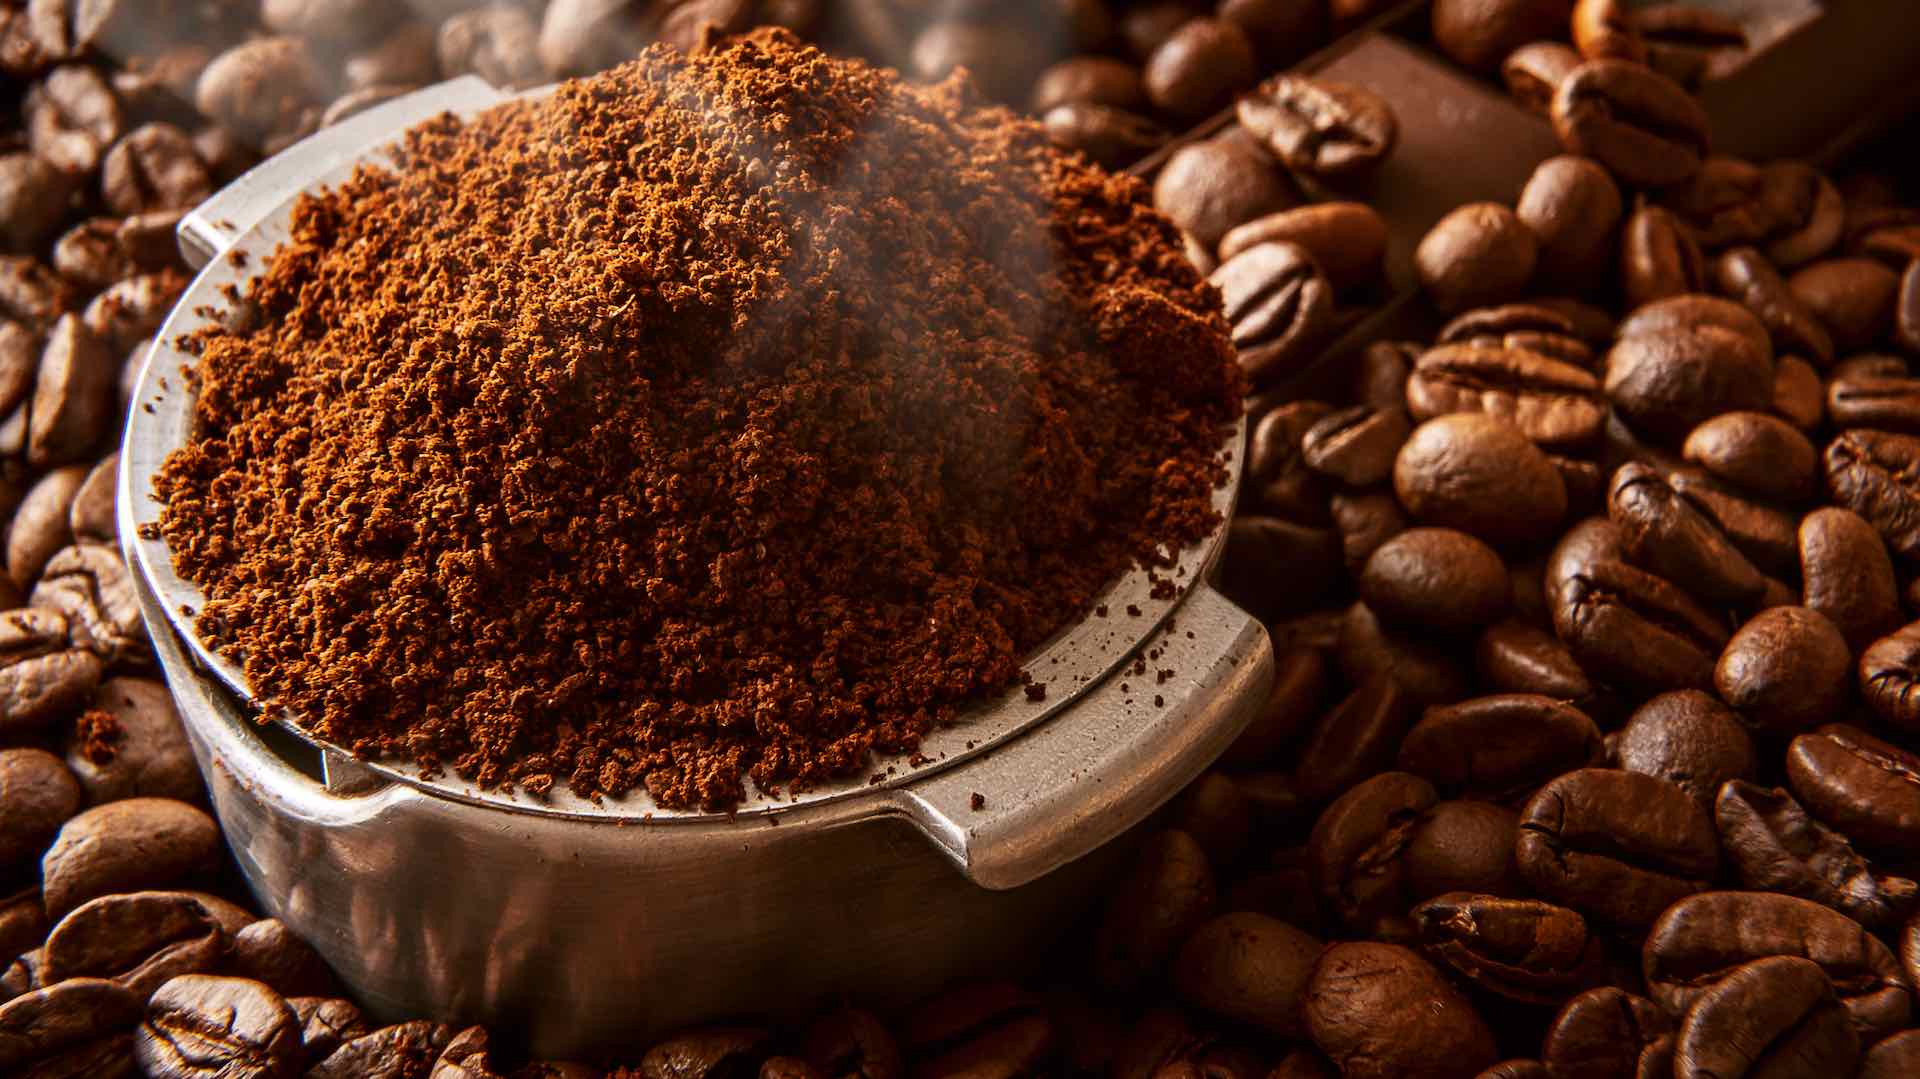 امید دم - چگونه تفاله قهوه استفاده شده ممکن است با آلزایمر و پارکینسون مبارزه کند